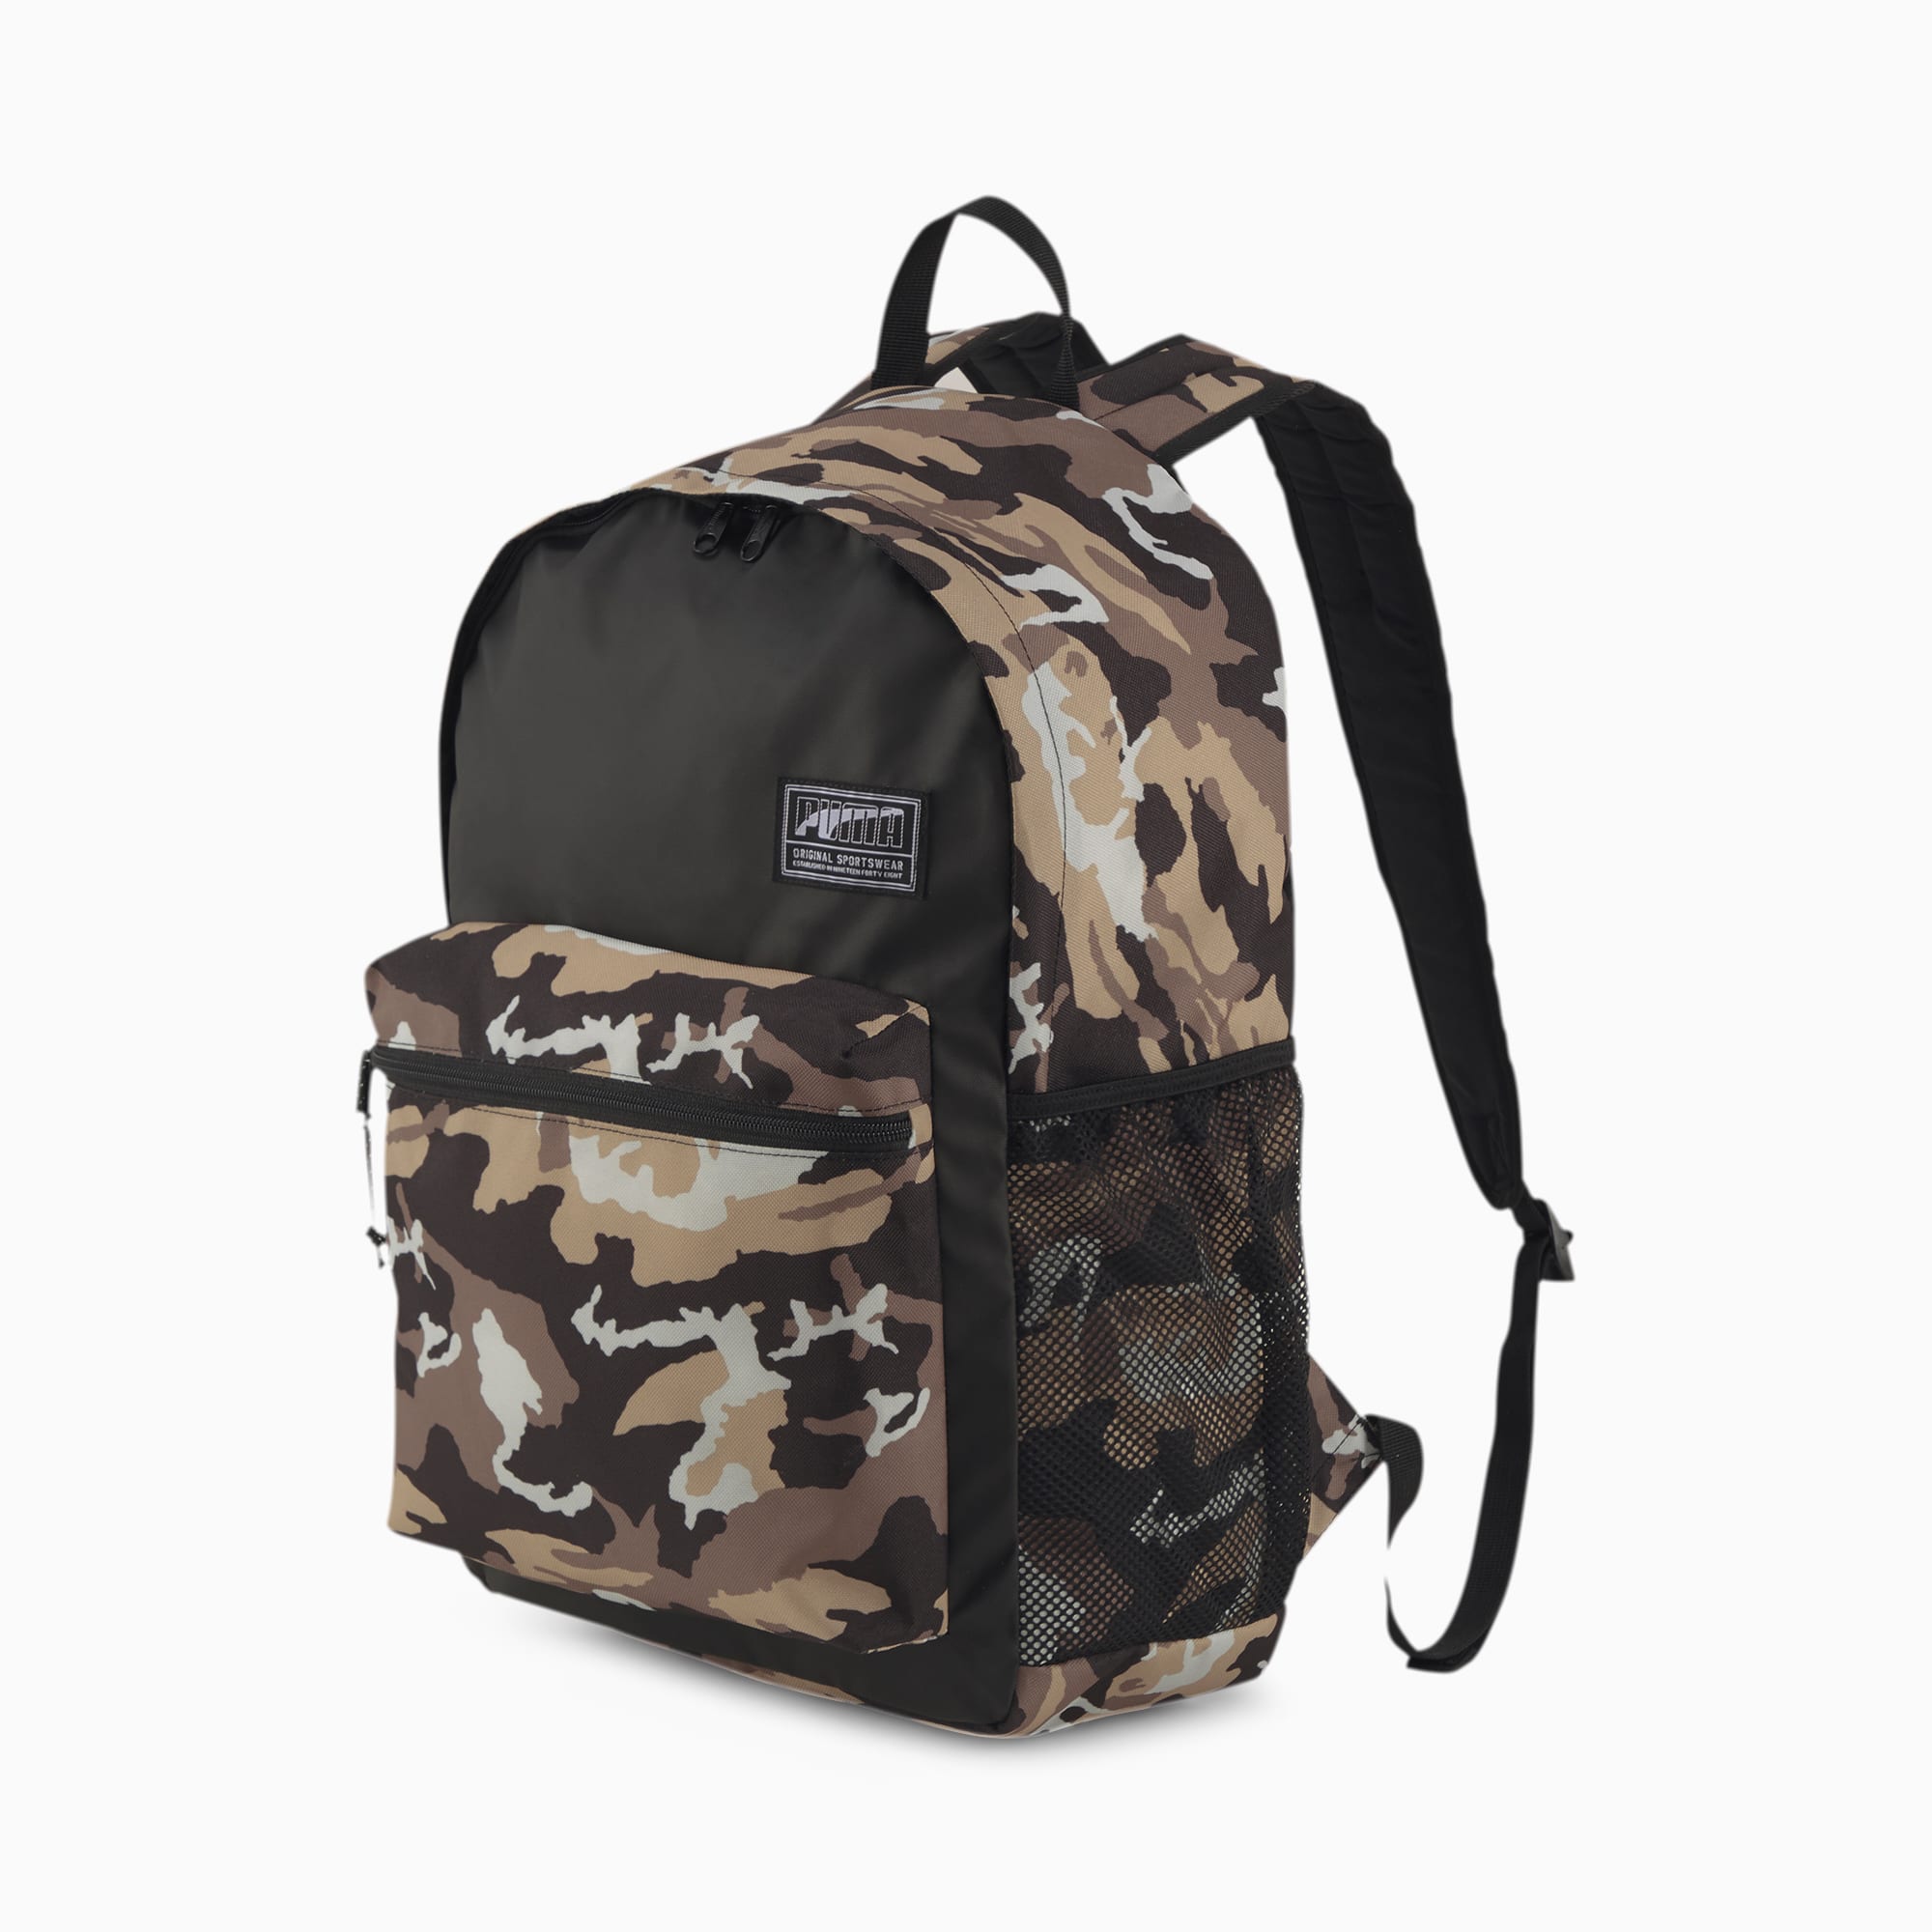 academy backpack puma